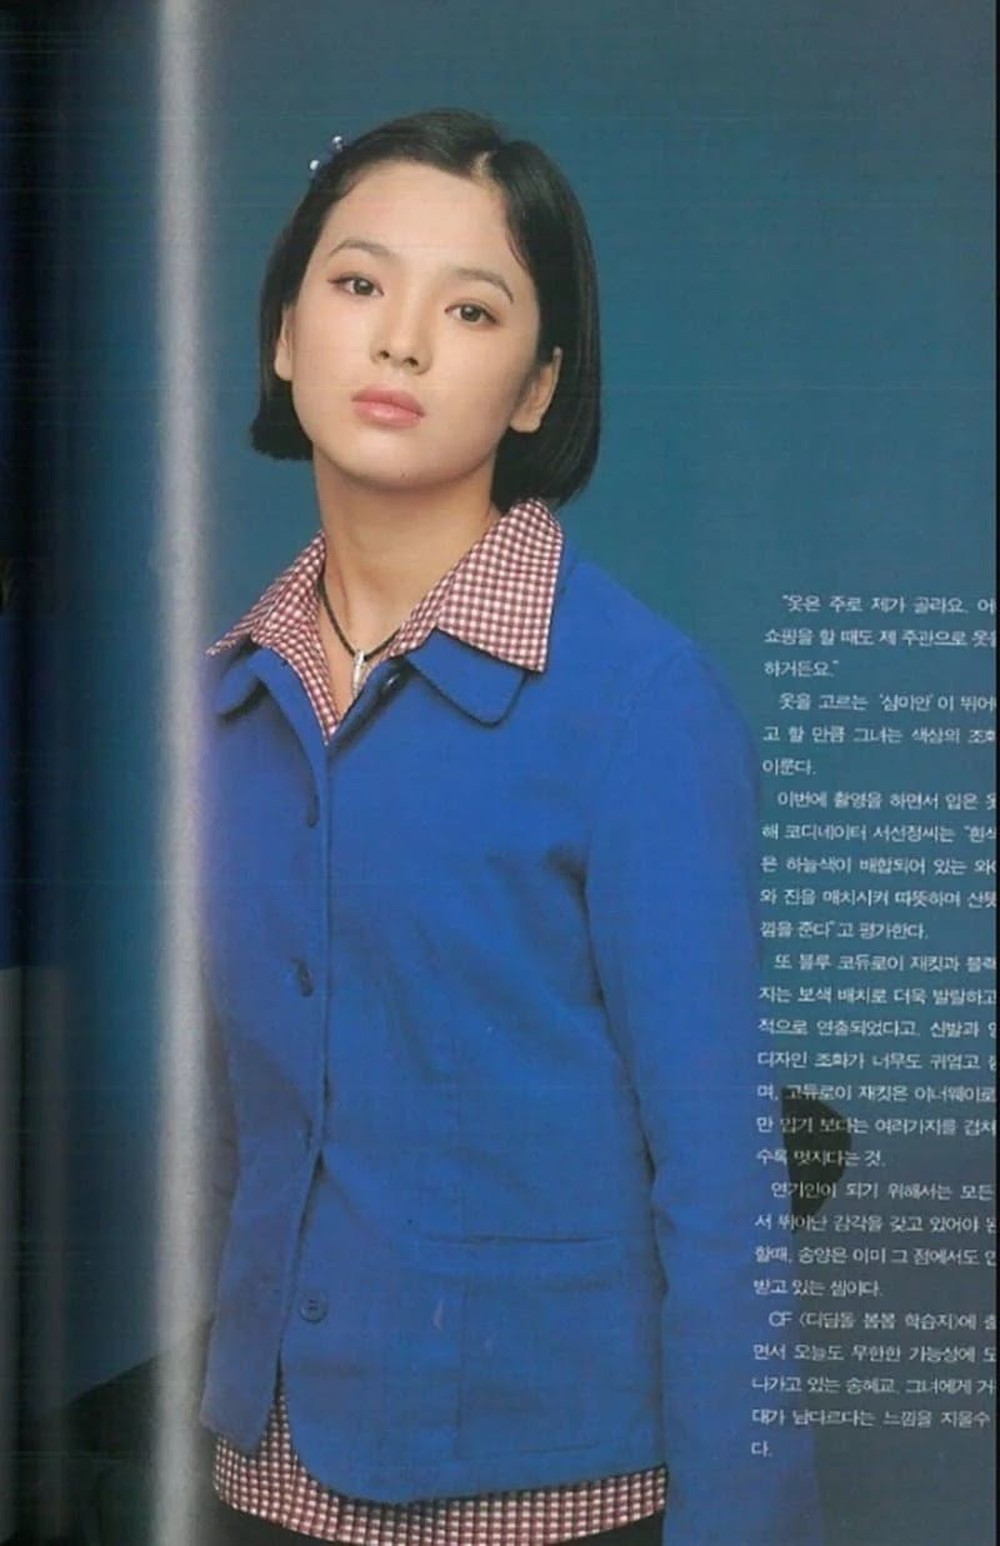 Lộ ảnh chưa từng được công bố chứng minh Song Hye Kyo đẹp tự nhiên - Ảnh 4.